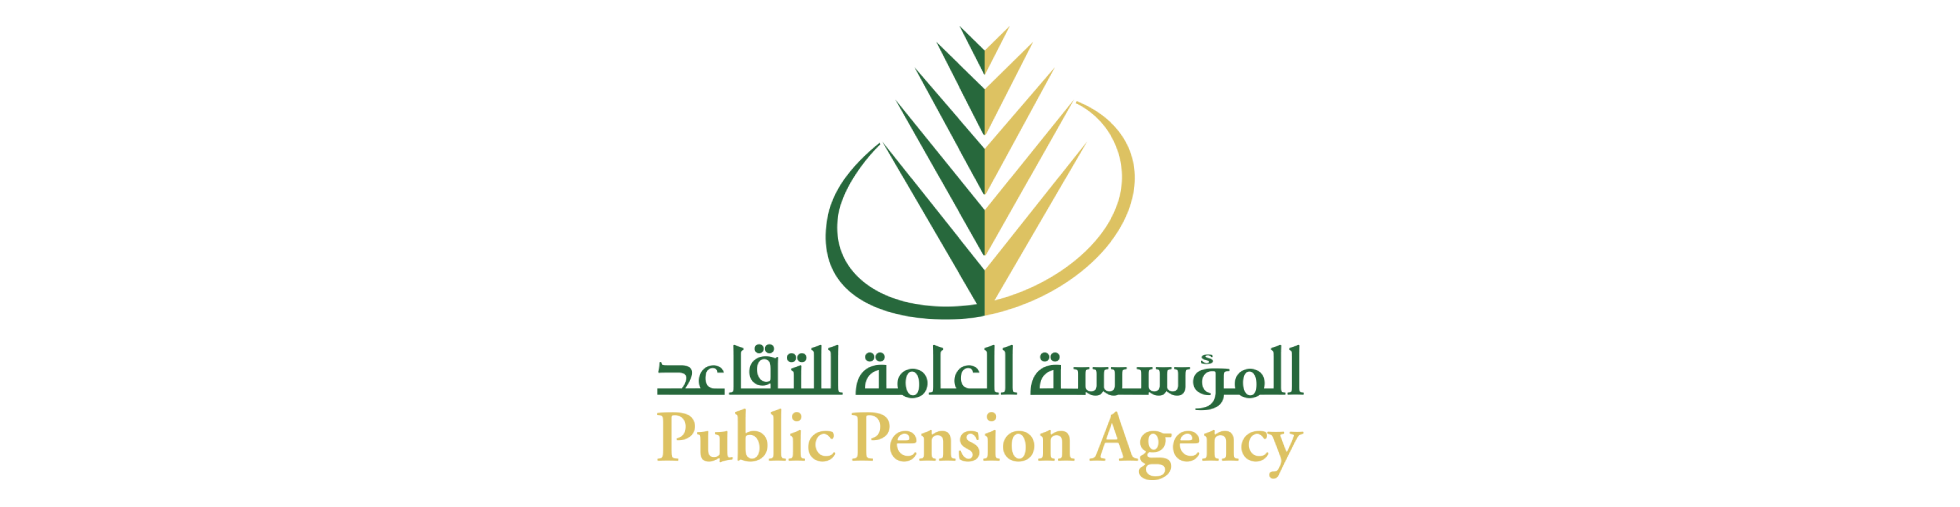 Public Pension Agency 